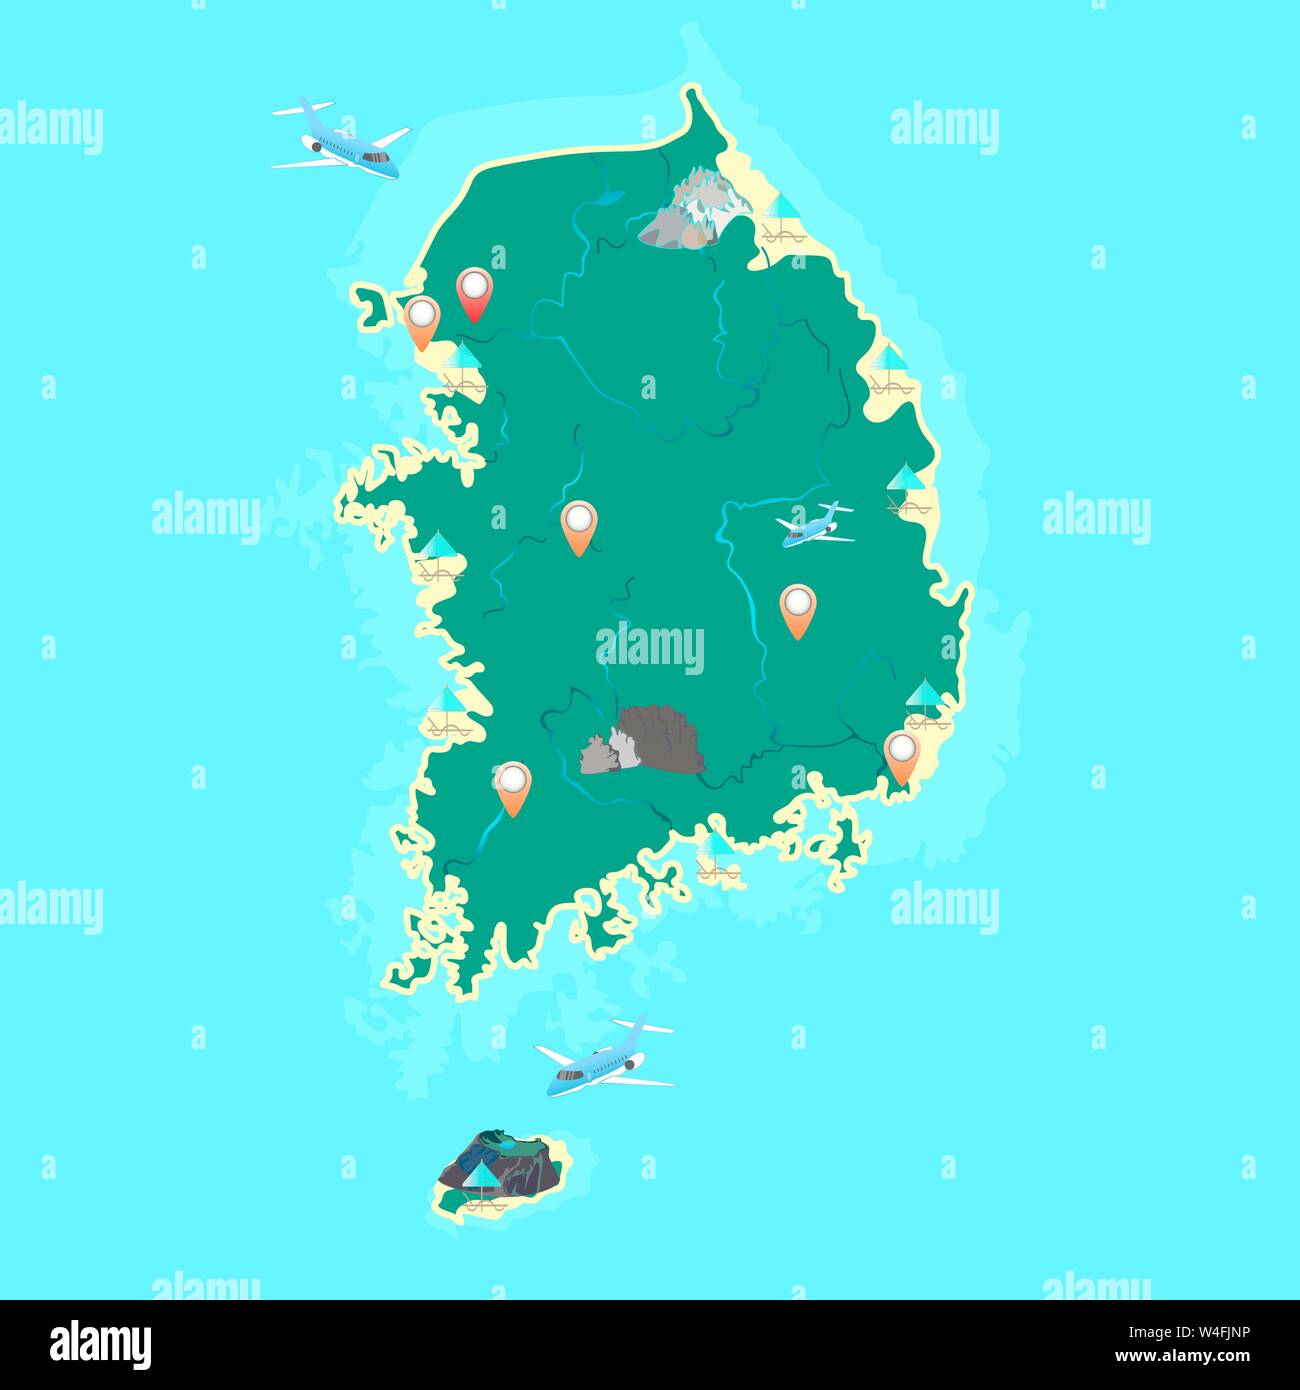 Corea del Sud mappa vettoriale con la designazione delle più grandi montagne, isole, vulcano, spiagge, la città e il fiume. Vettore. Illustrazione Vettoriale